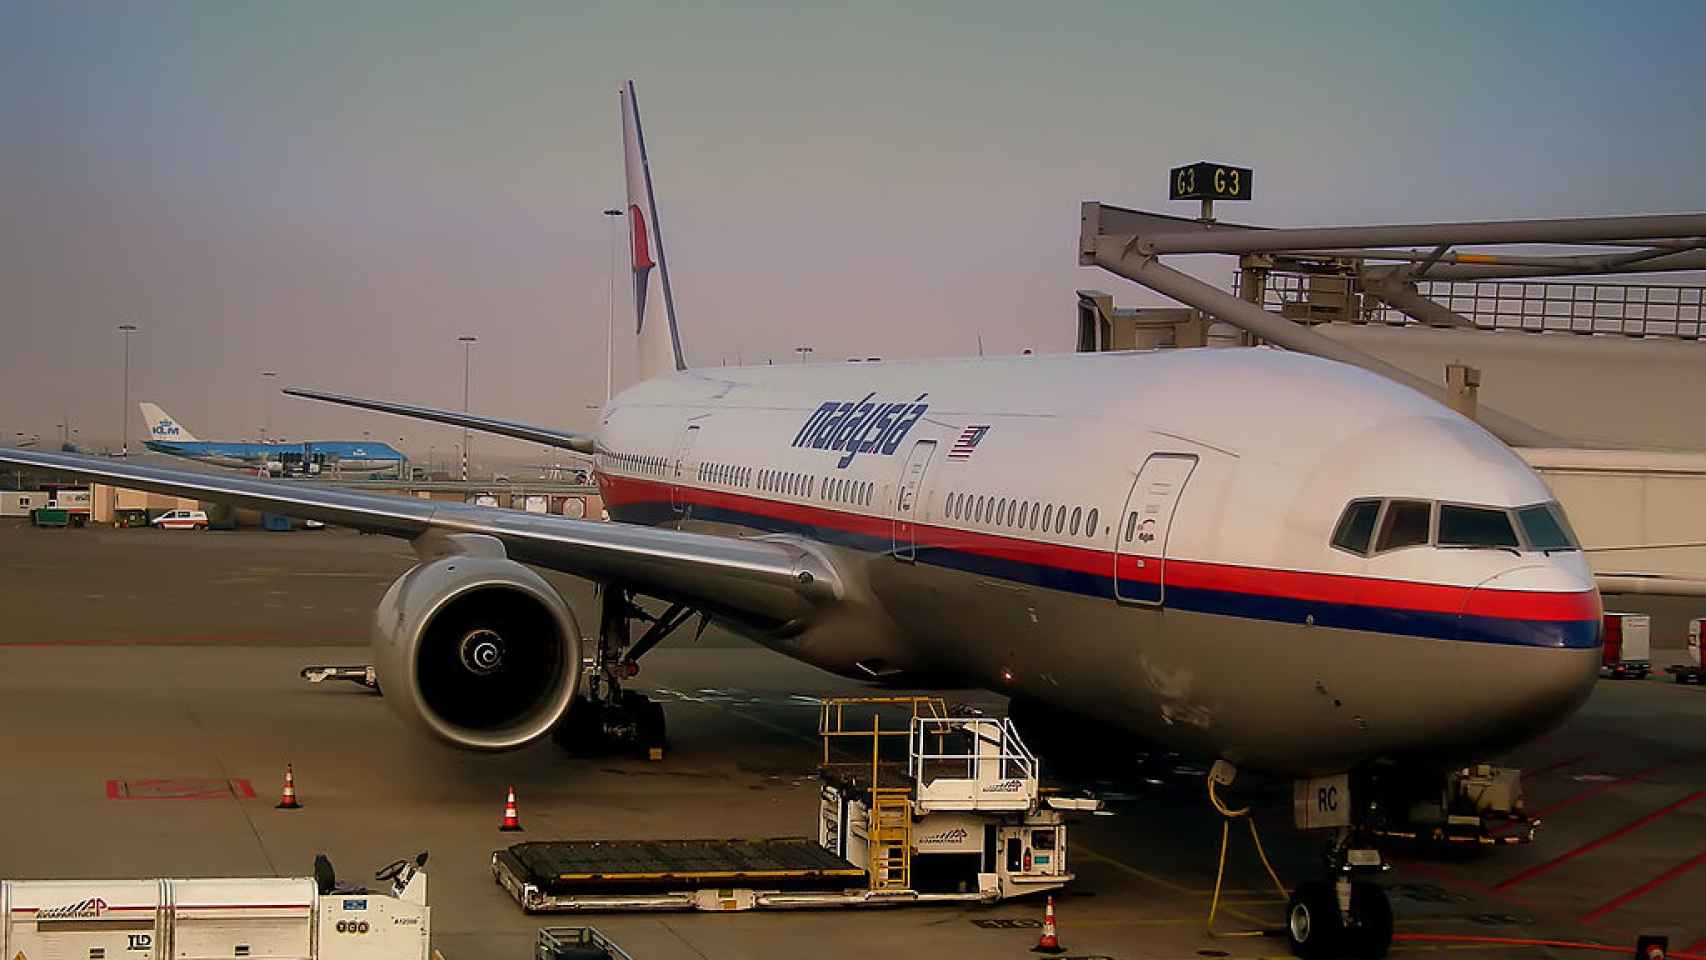 Imagen de un avión de Malaysia Airlines similar que desapareció el 8 de marzo de 2014